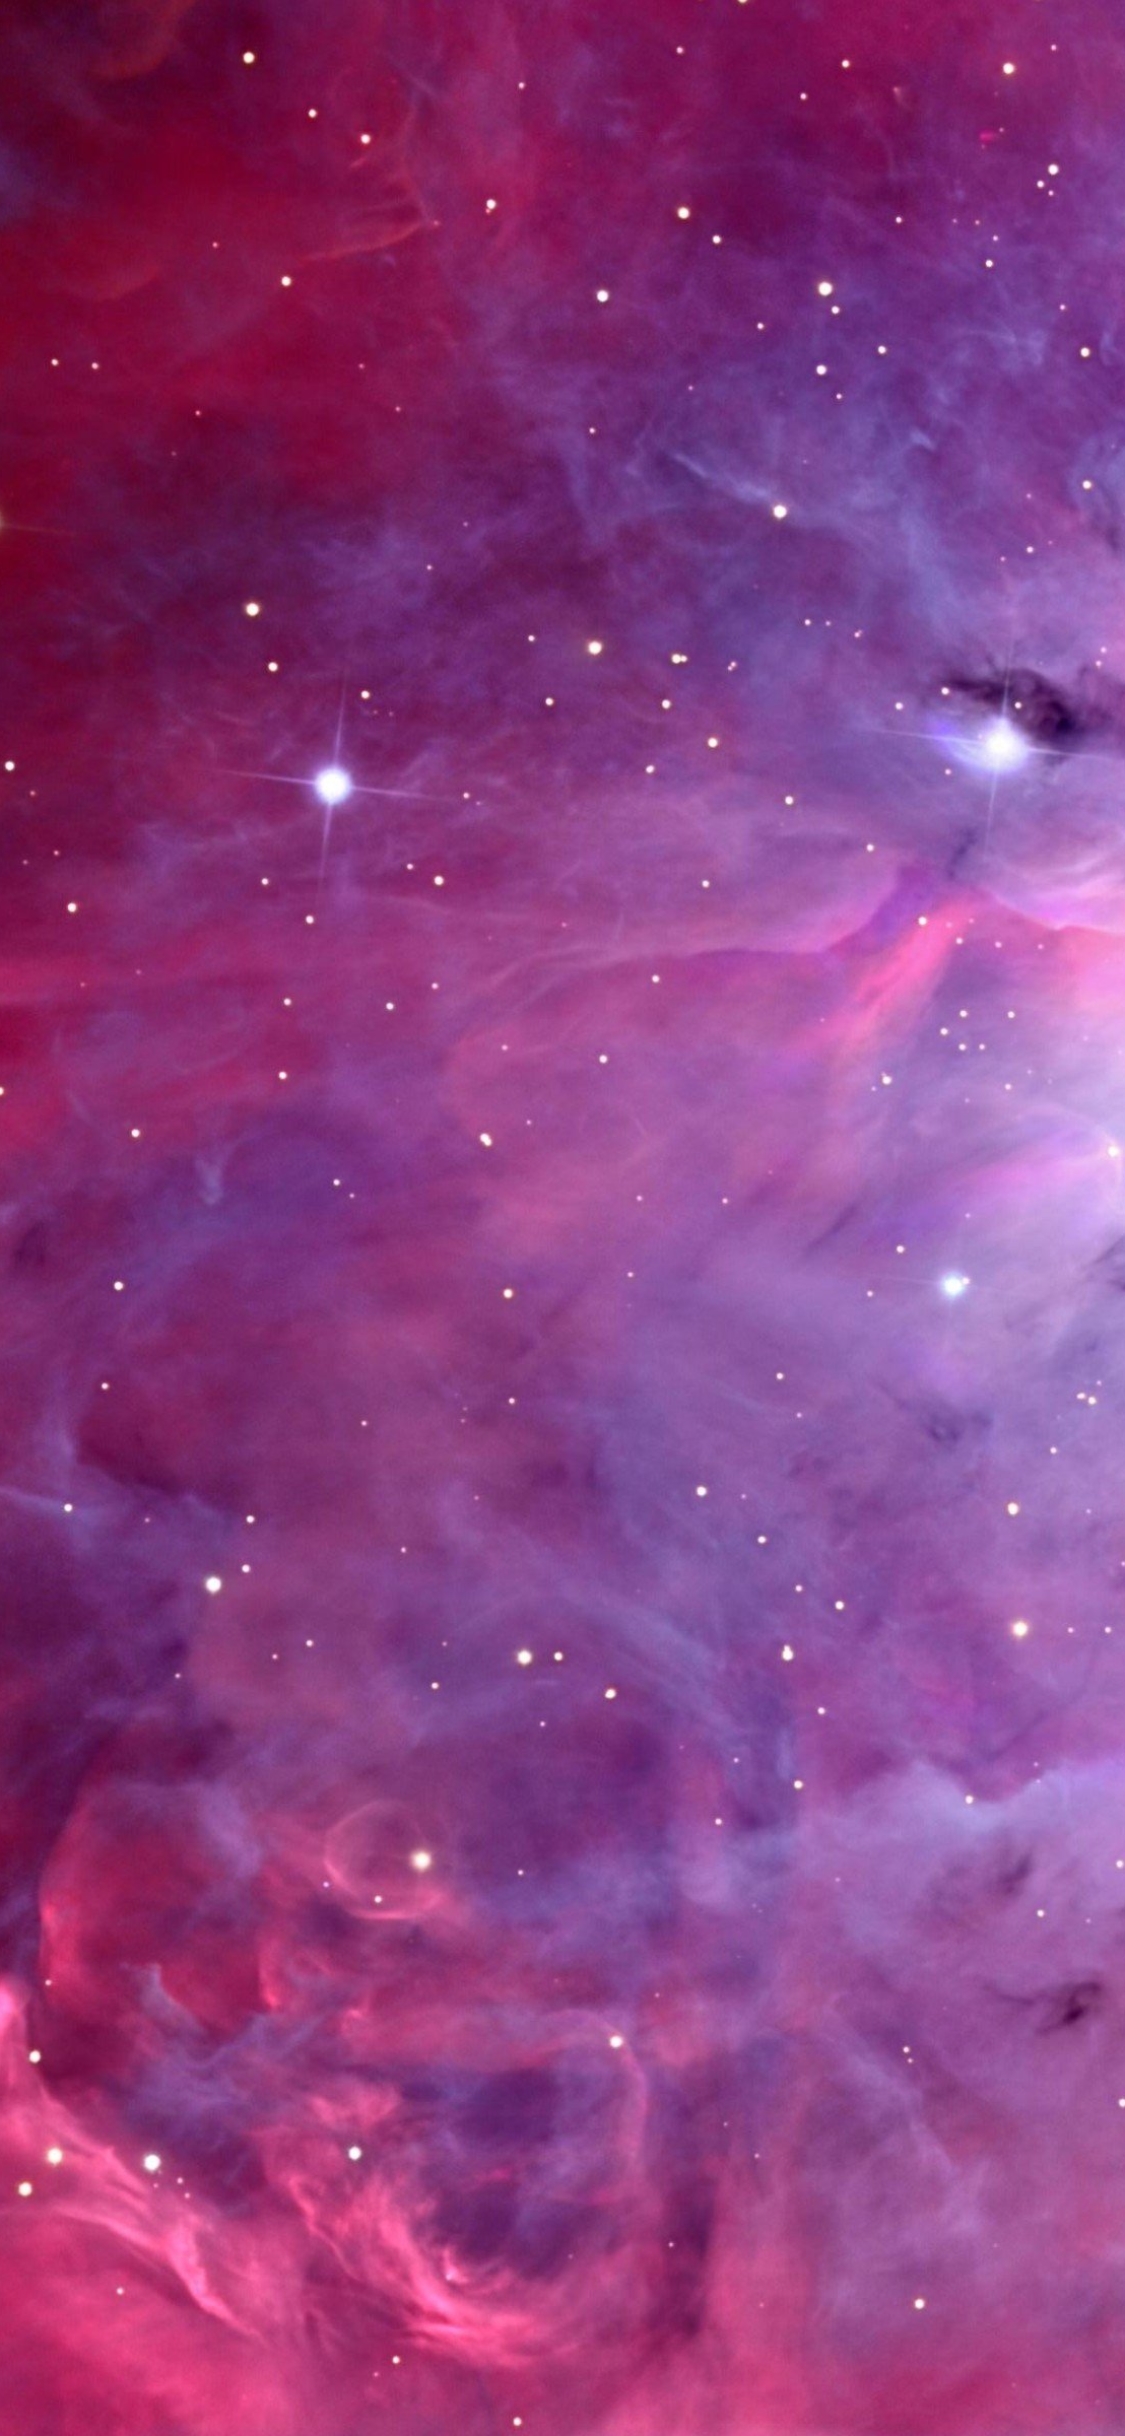 Descarga gratuita de fondo de pantalla para móvil de Estrellas, Rosa, Violeta, Nebulosa, Rosado, Espacio, Púrpura, Ciencia Ficción.